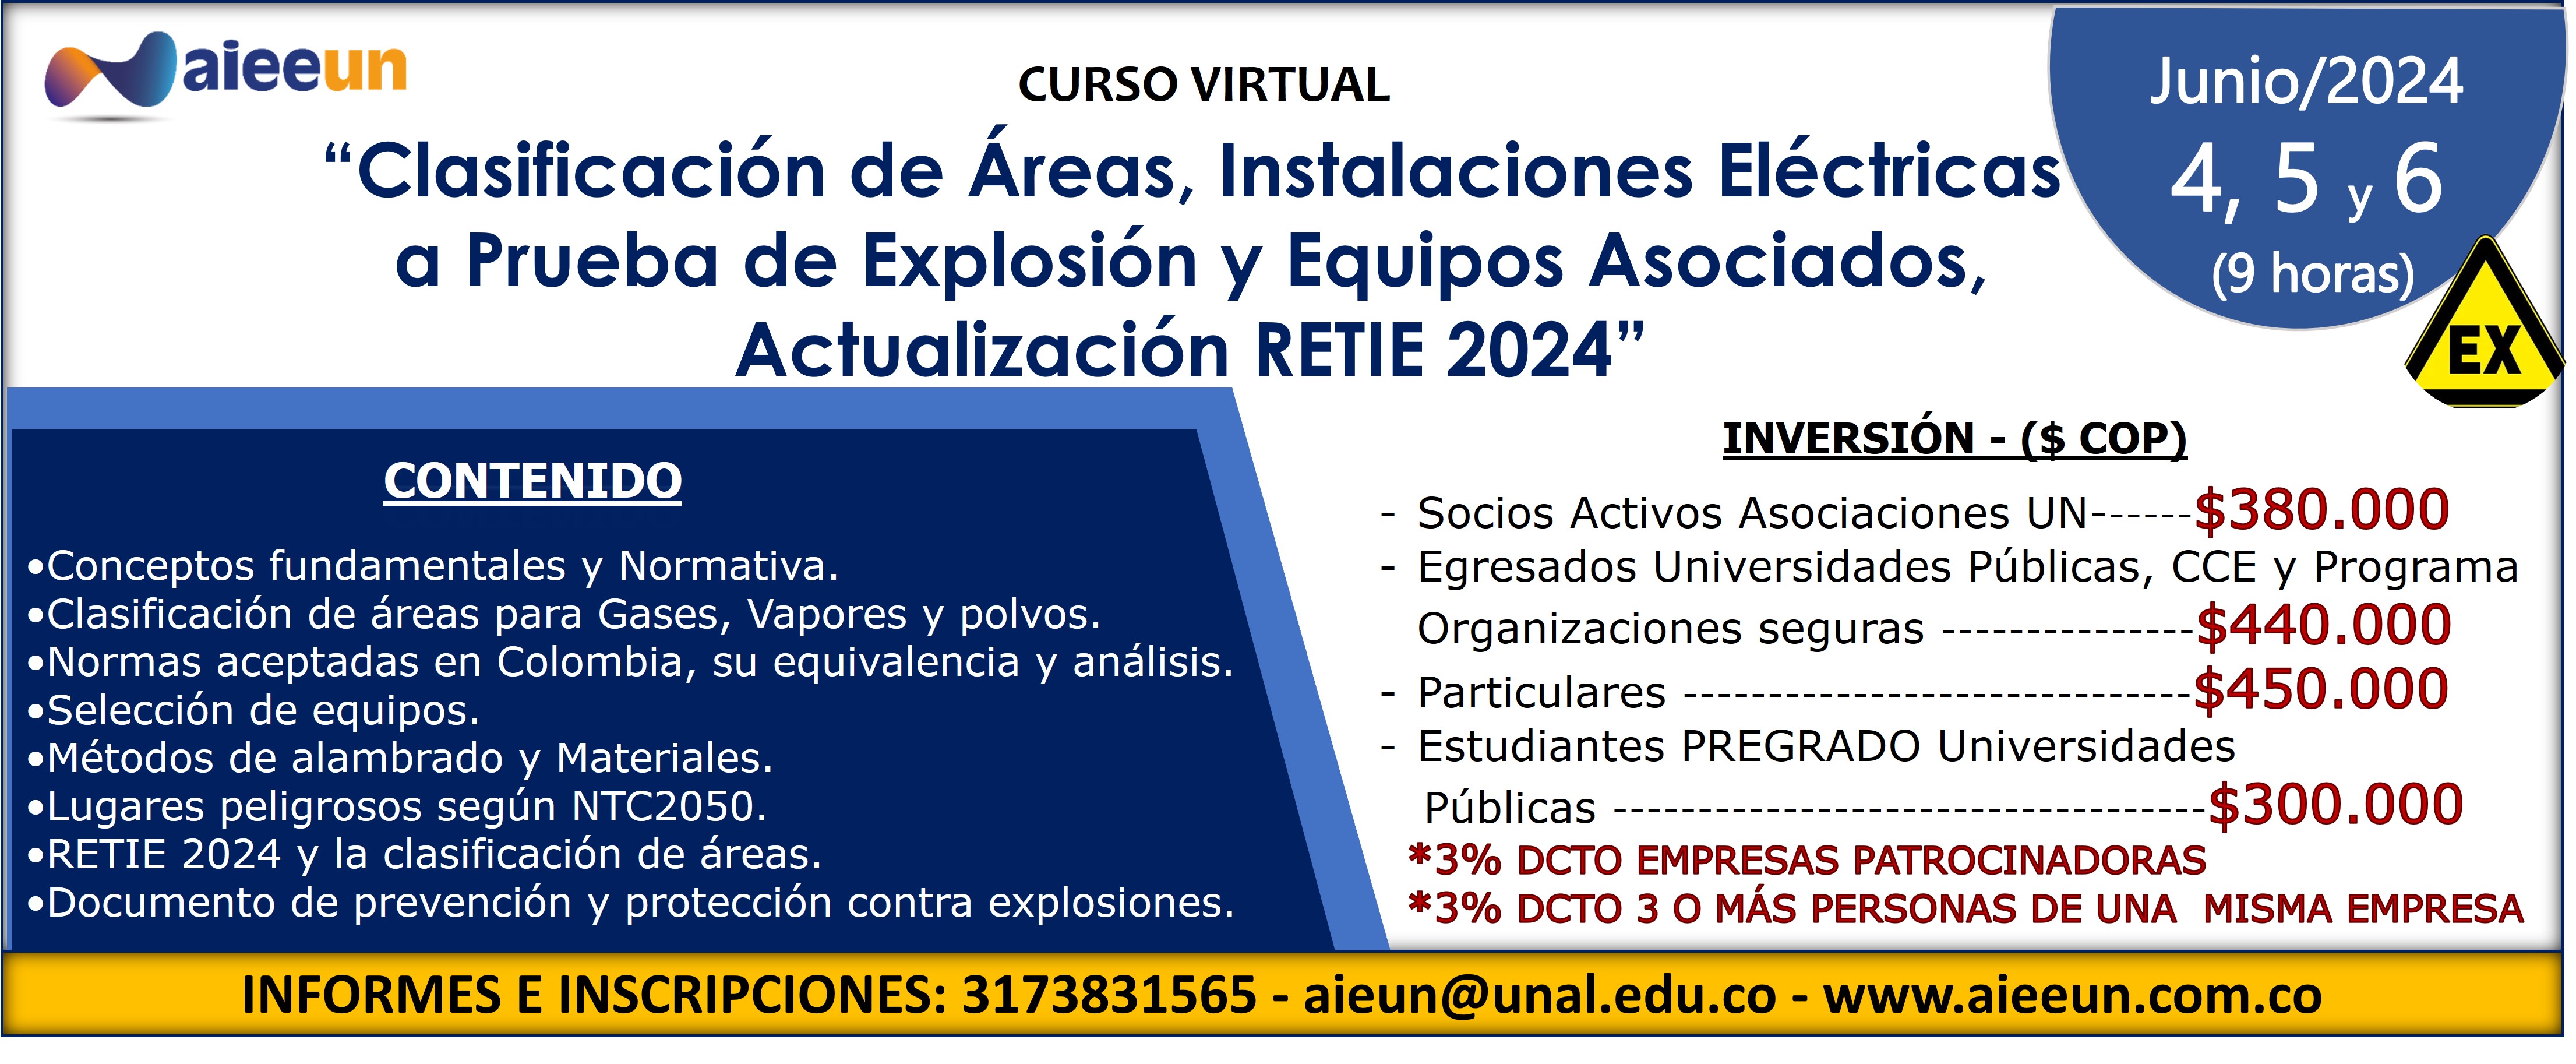 Curso Virtual "CLASIFICACIÓN DE ÁREAS, INSTALACIONES ELÉCTRICAS A PRUEBA DE EXPLOSIÓN"